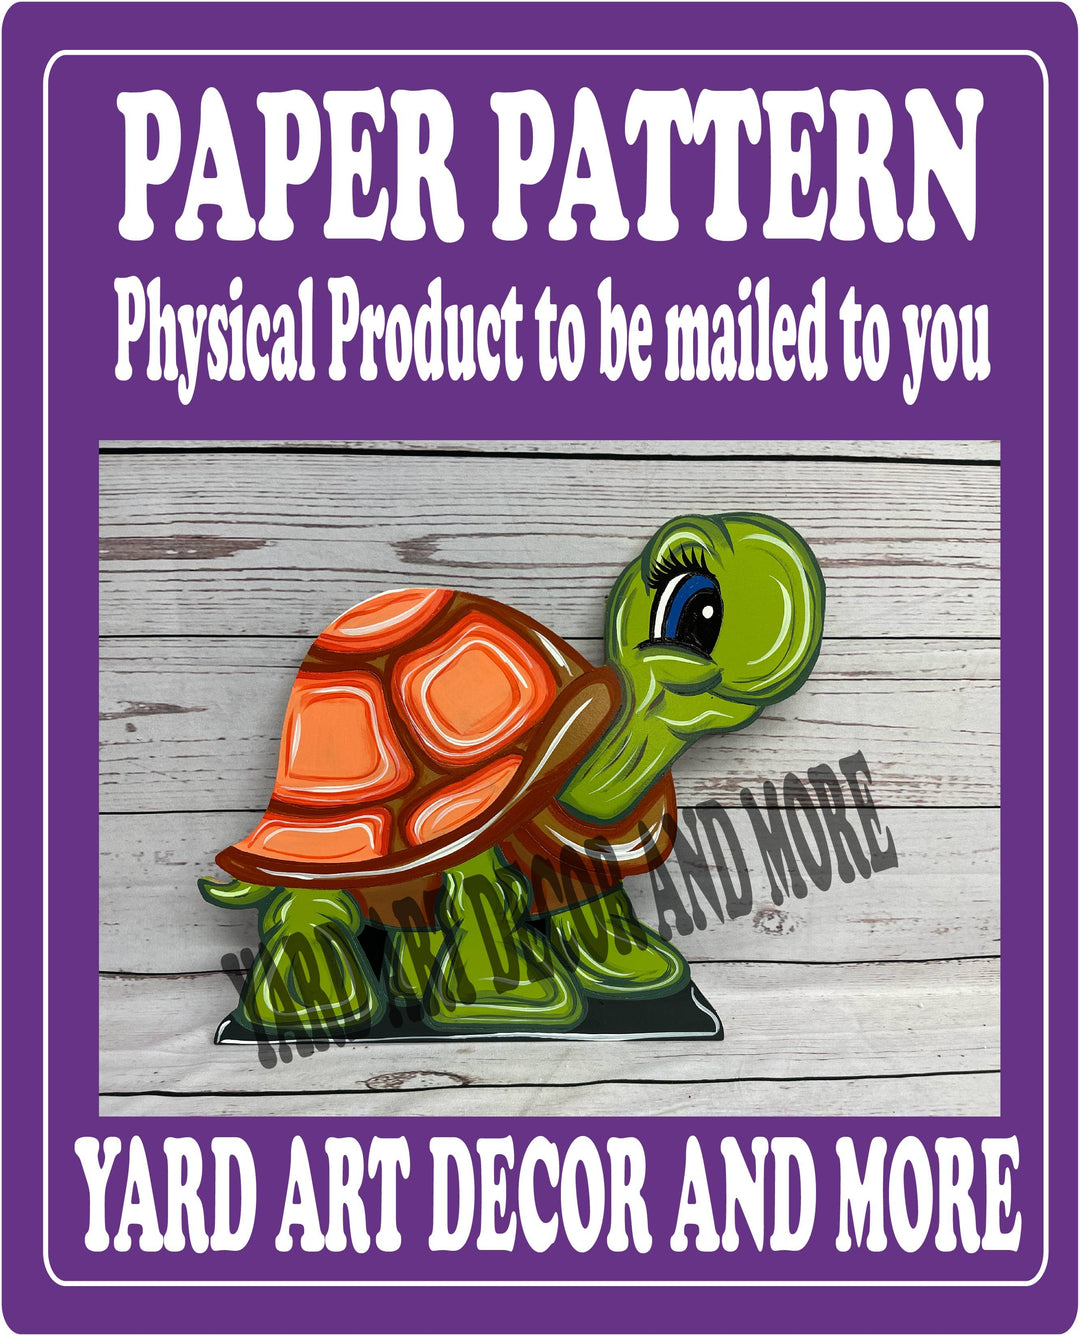 Playful Pokey the Turtle yard art decoration paper pattern